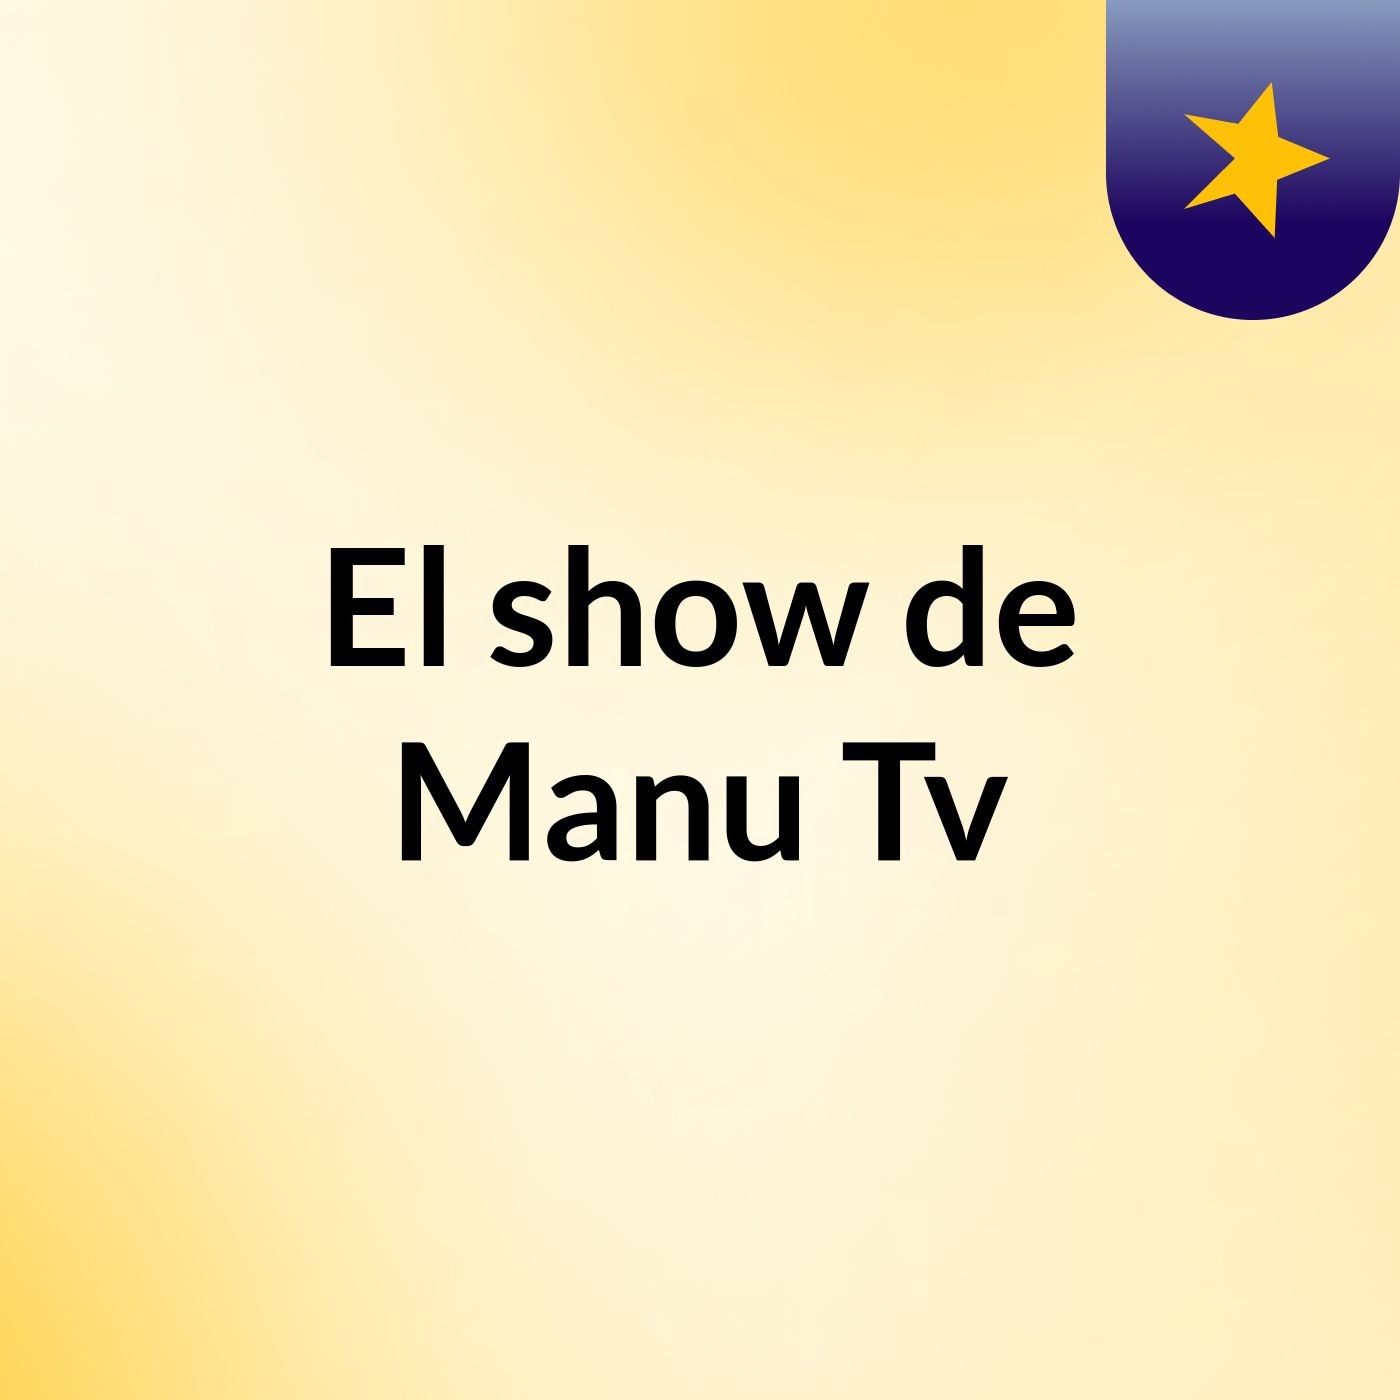 El show de Manu Tv